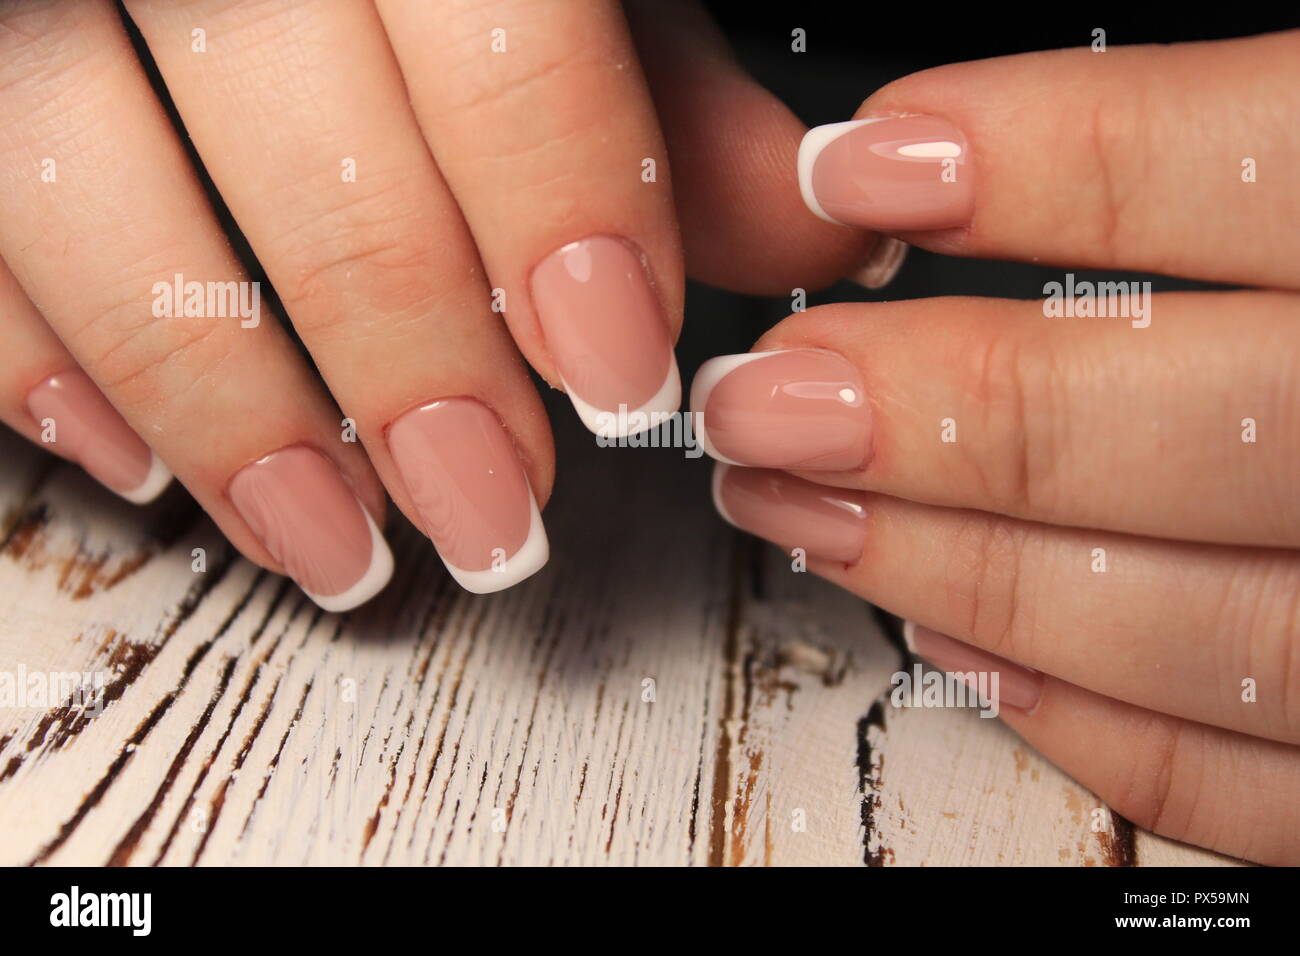 Perfekte Maniküre und natürlichen Nägeln. Attraktive moderne Nail Art  Stockfotografie - Alamy